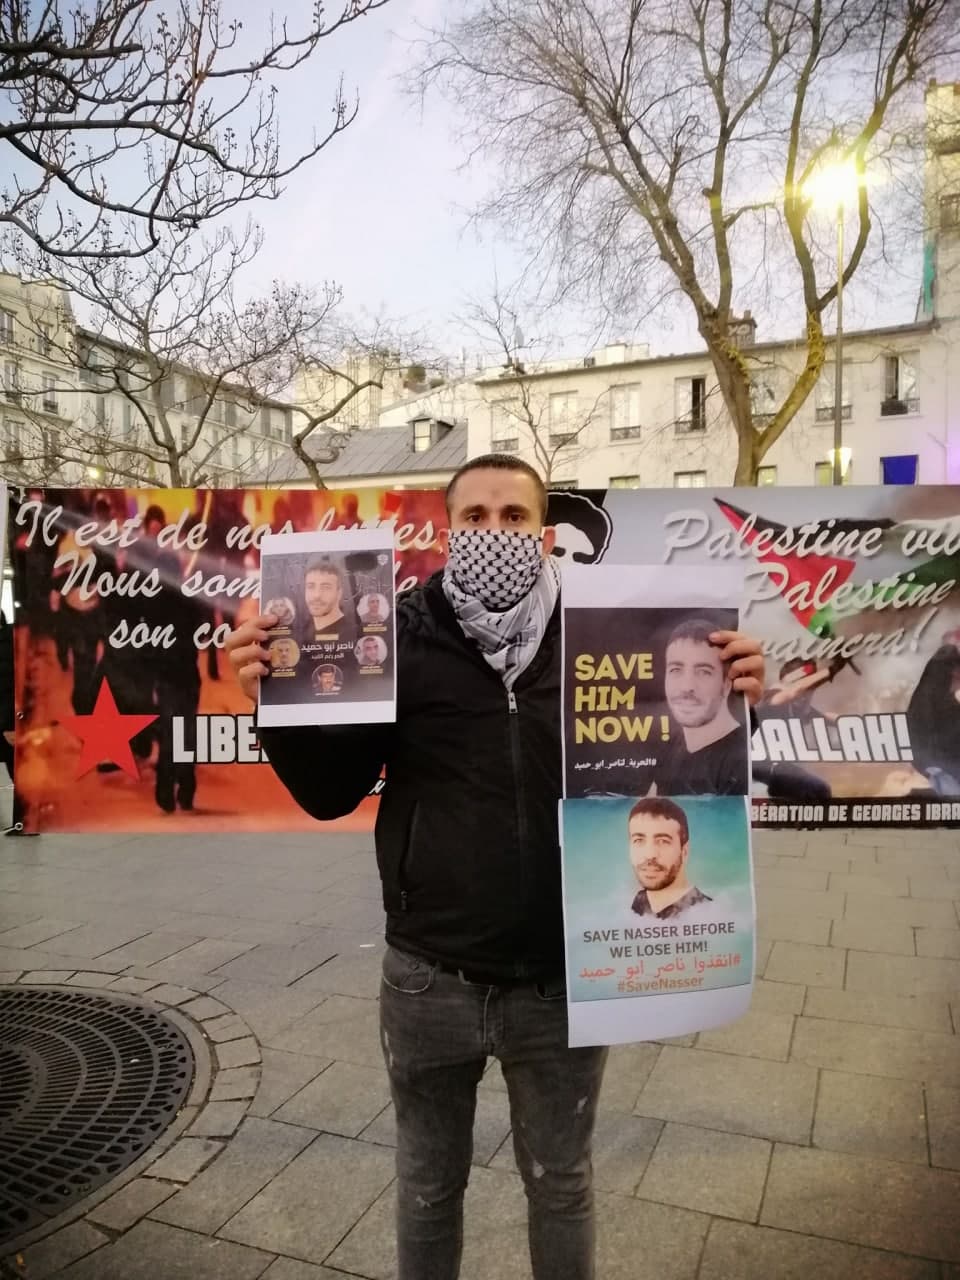 بالصور: وقفة تضامنية مع الأسير ناصر أبو حميد وأهالي النقب المحتل في العاصمة الفرنسية باريس